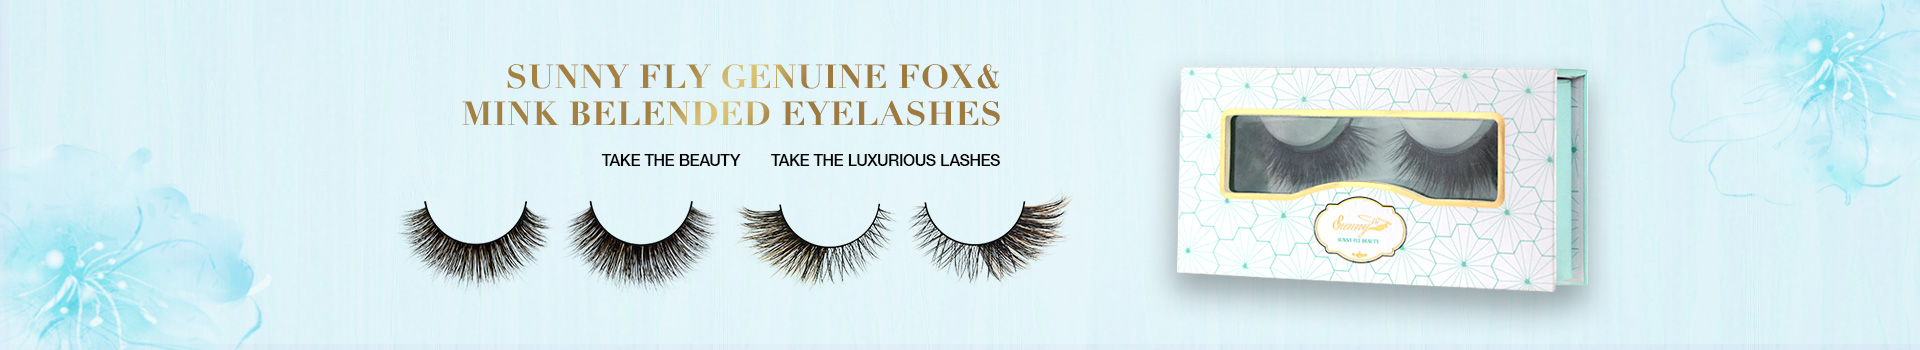 Fox & Mink Fur Blended Eyelashes FMB10